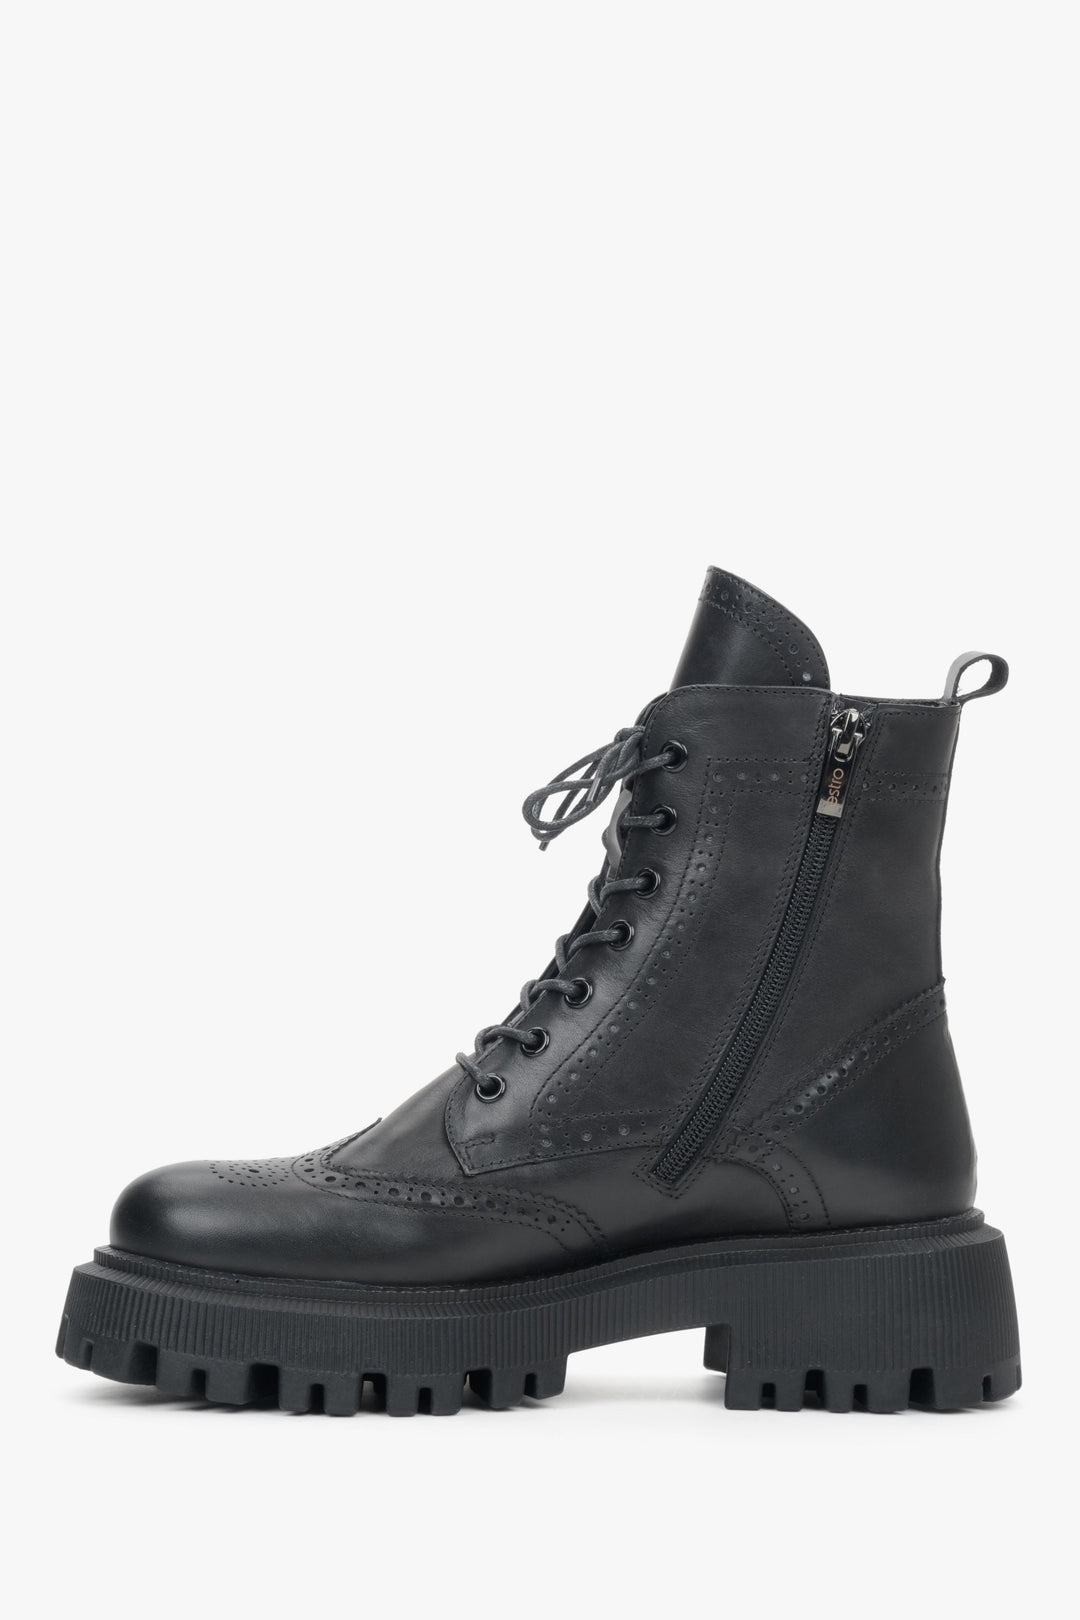 Lace-up, leather Estro women's boots platform - shoe profile.